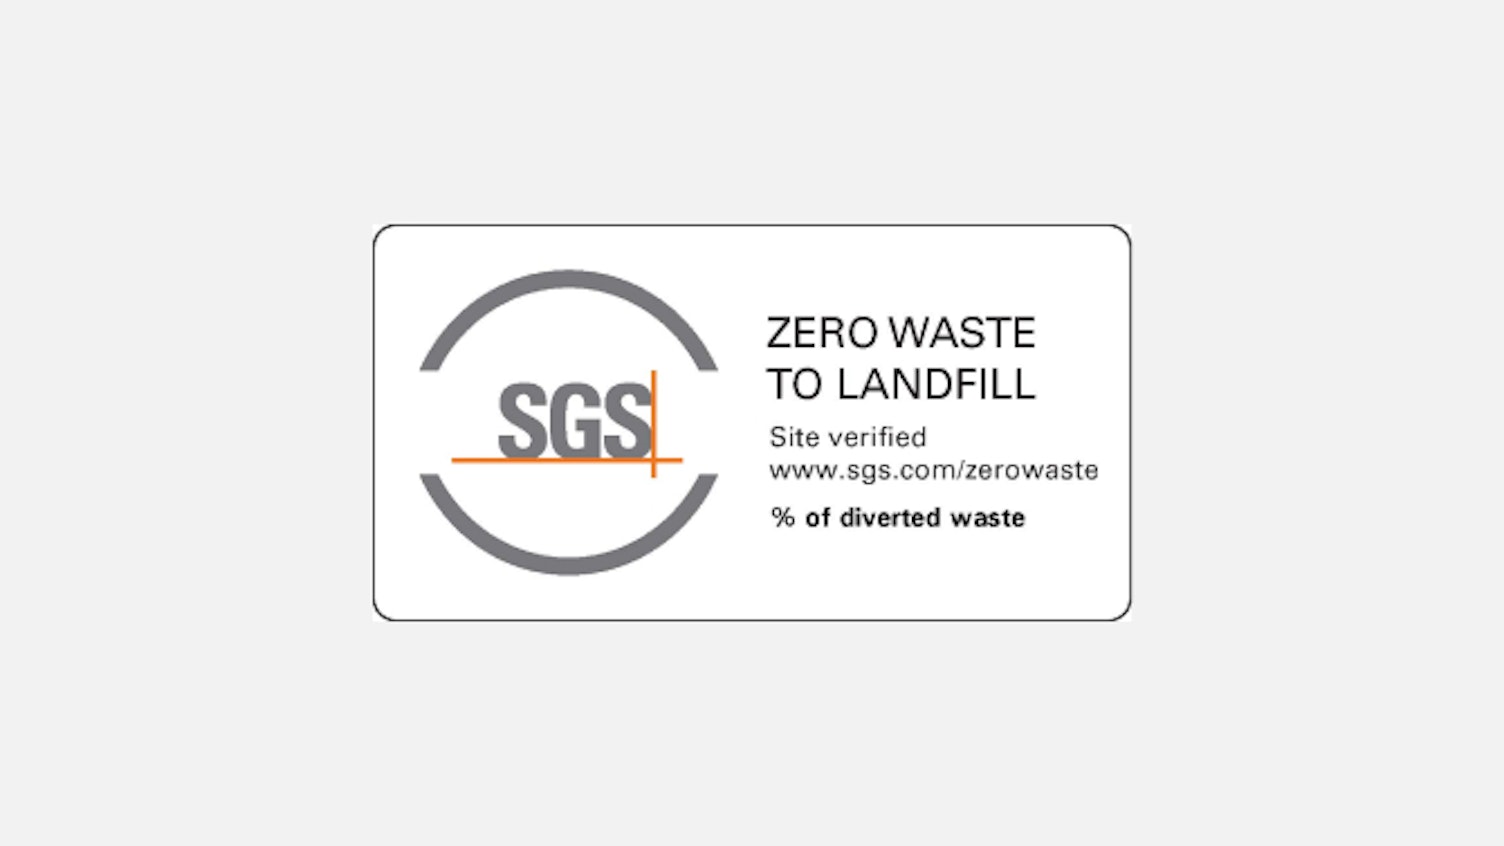 Zero Waste to Landfill